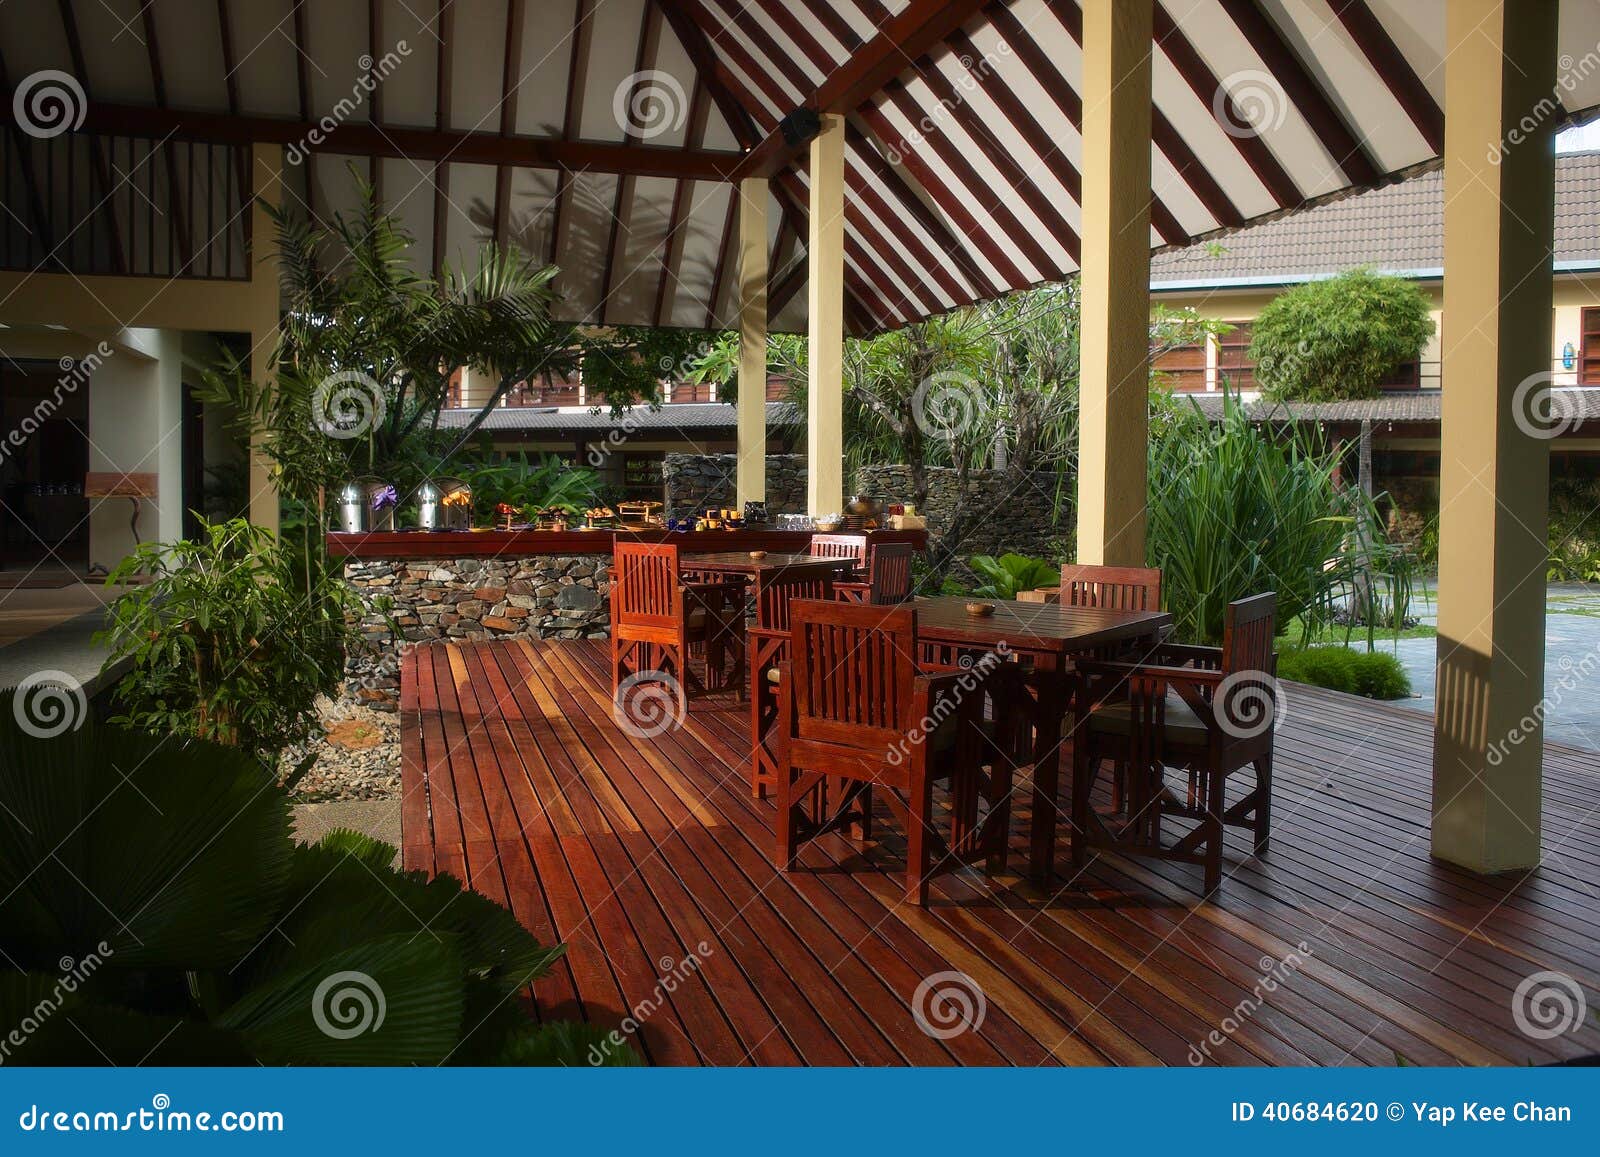 veranda dining